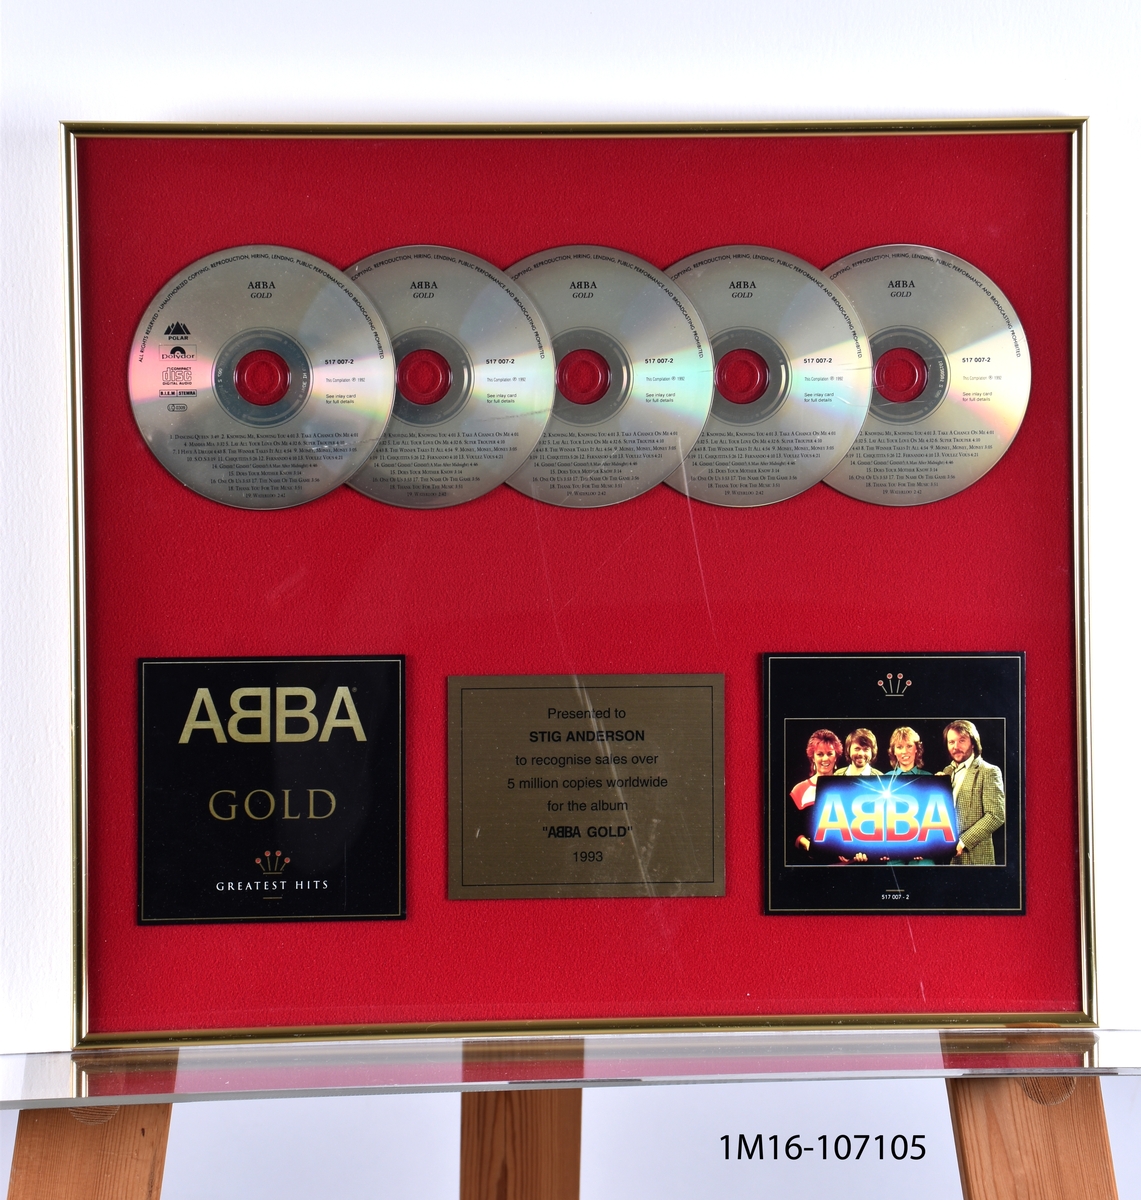 Diplom för ”ABBA GOLD Greatest hits”. Fem CD-skivor uppradade. Under dem två stycken skivkonvolut och mellan dem en plakett. Röd bakgrund och gudfärgad ram.

Påskrift: Presented to STIG ANDERSSON to recognise sales over 5 million copies worldwide for the album “ABBA GOLD” 1993.